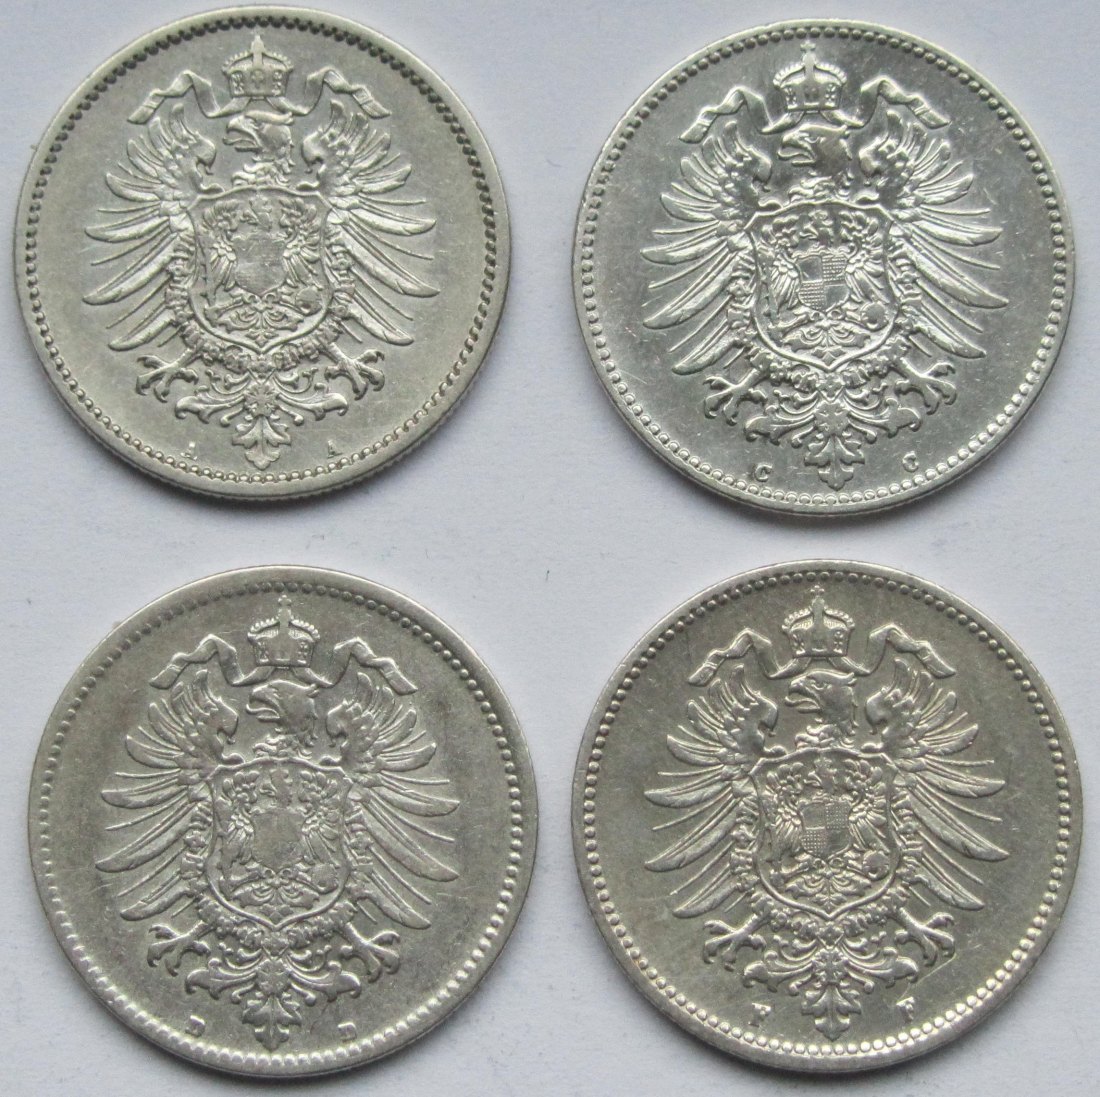  Kaiserreich: 4 x 1 Mark 1875, bessere Erhaltungen   